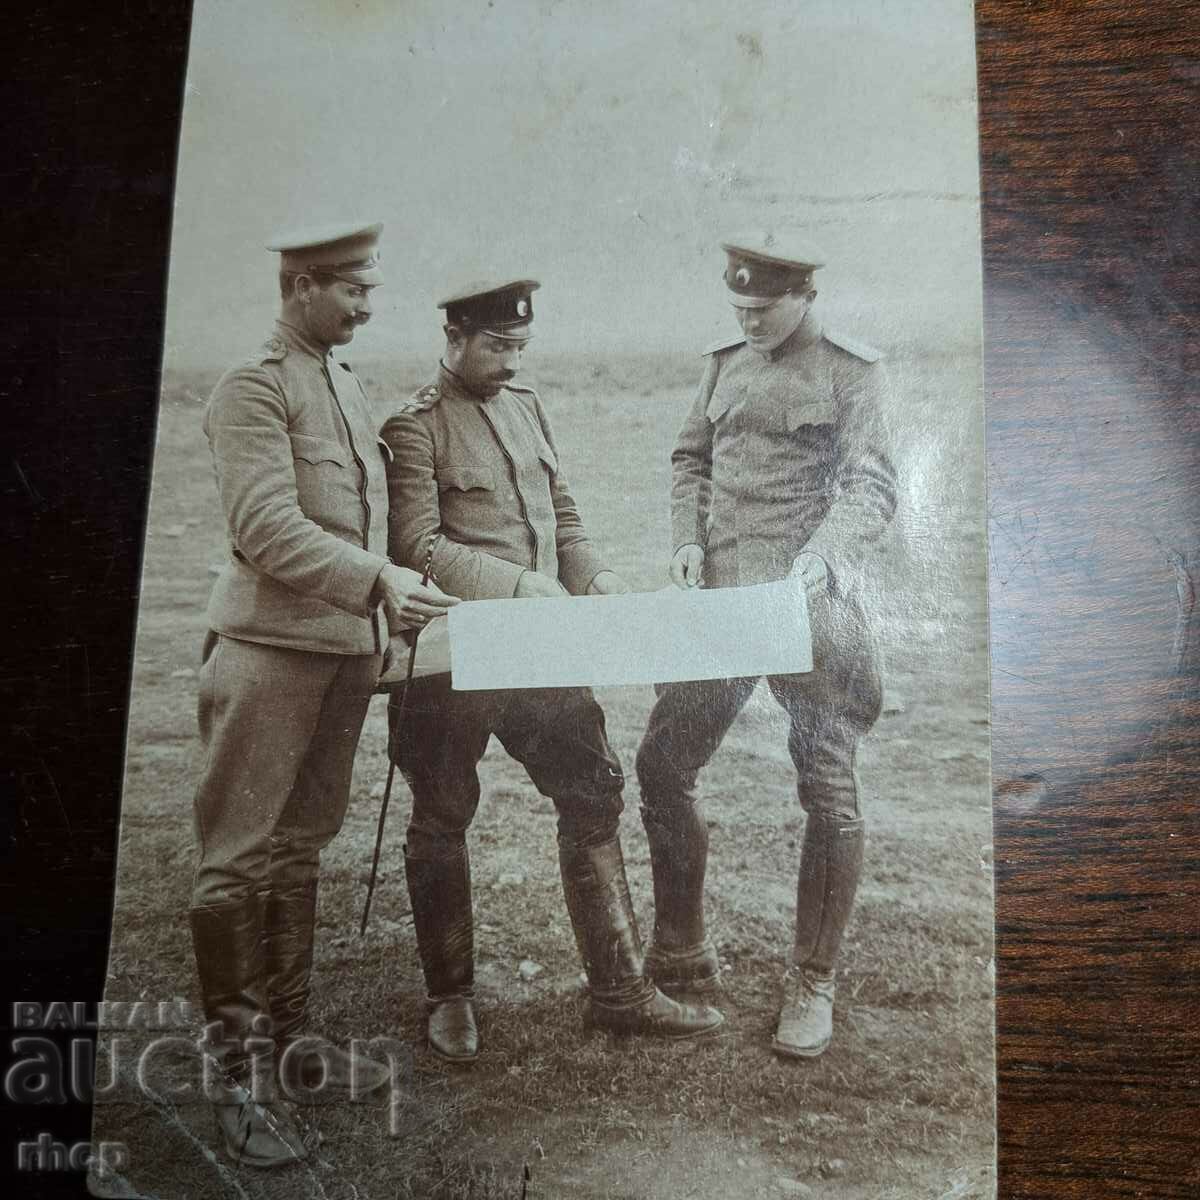 Αξιωματικοί με κάρτα Α' Παγκοσμίου Πολέμου παλιά στρατιωτική φωτογραφία